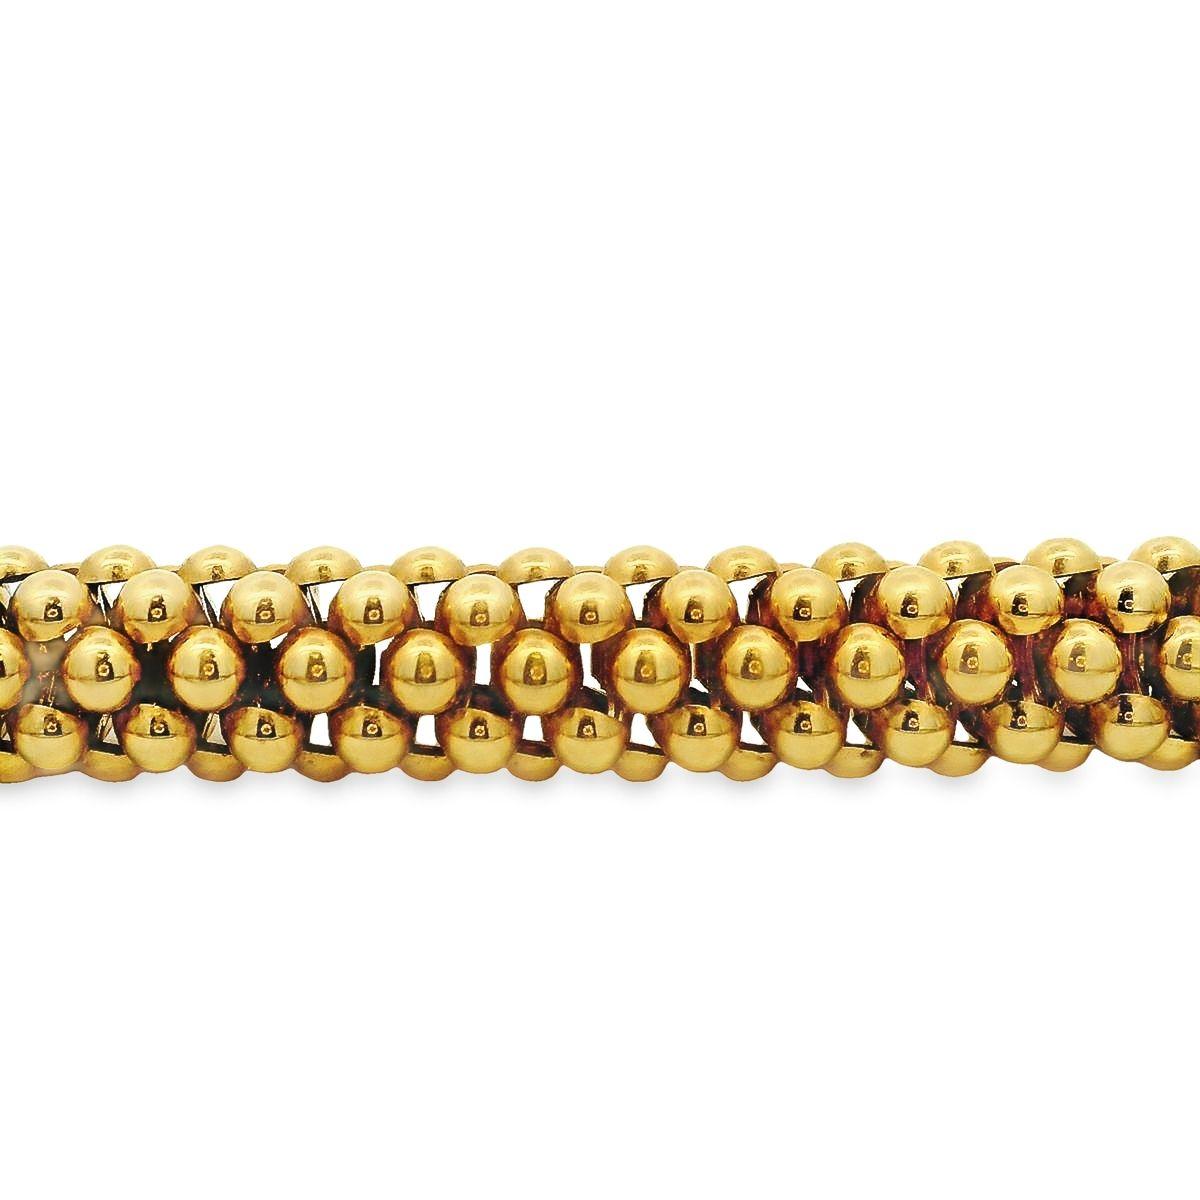 Diese in Italien hergestellte Halskette von Fope wird von Alex & Co. angeboten. Die klobige, auffällige Halskette aus 18 Karat Gelbgold zeichnet sich durch flexible Reihen ineinandergreifender Perlen mit einem runden, dekorativen Drehverschluss aus.